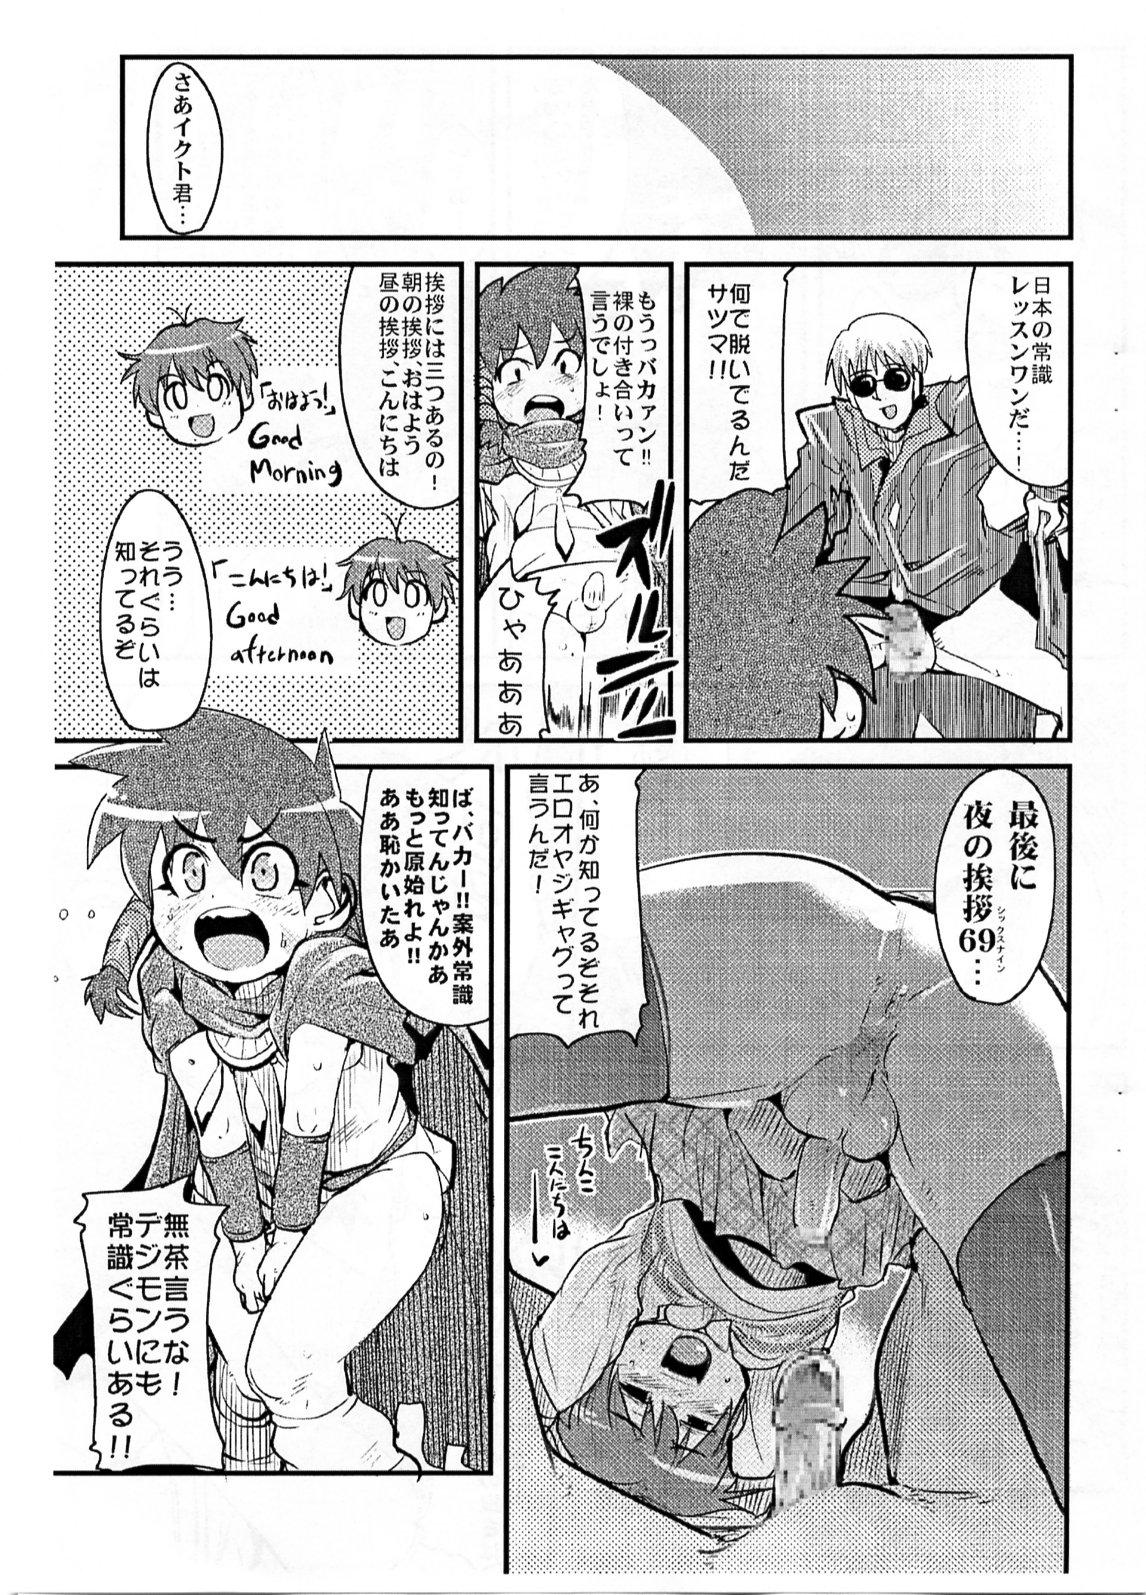 Sislovesme Yaseiji ni iroiro oshieru hon nano da - Digimon savers Livecams - Page 4